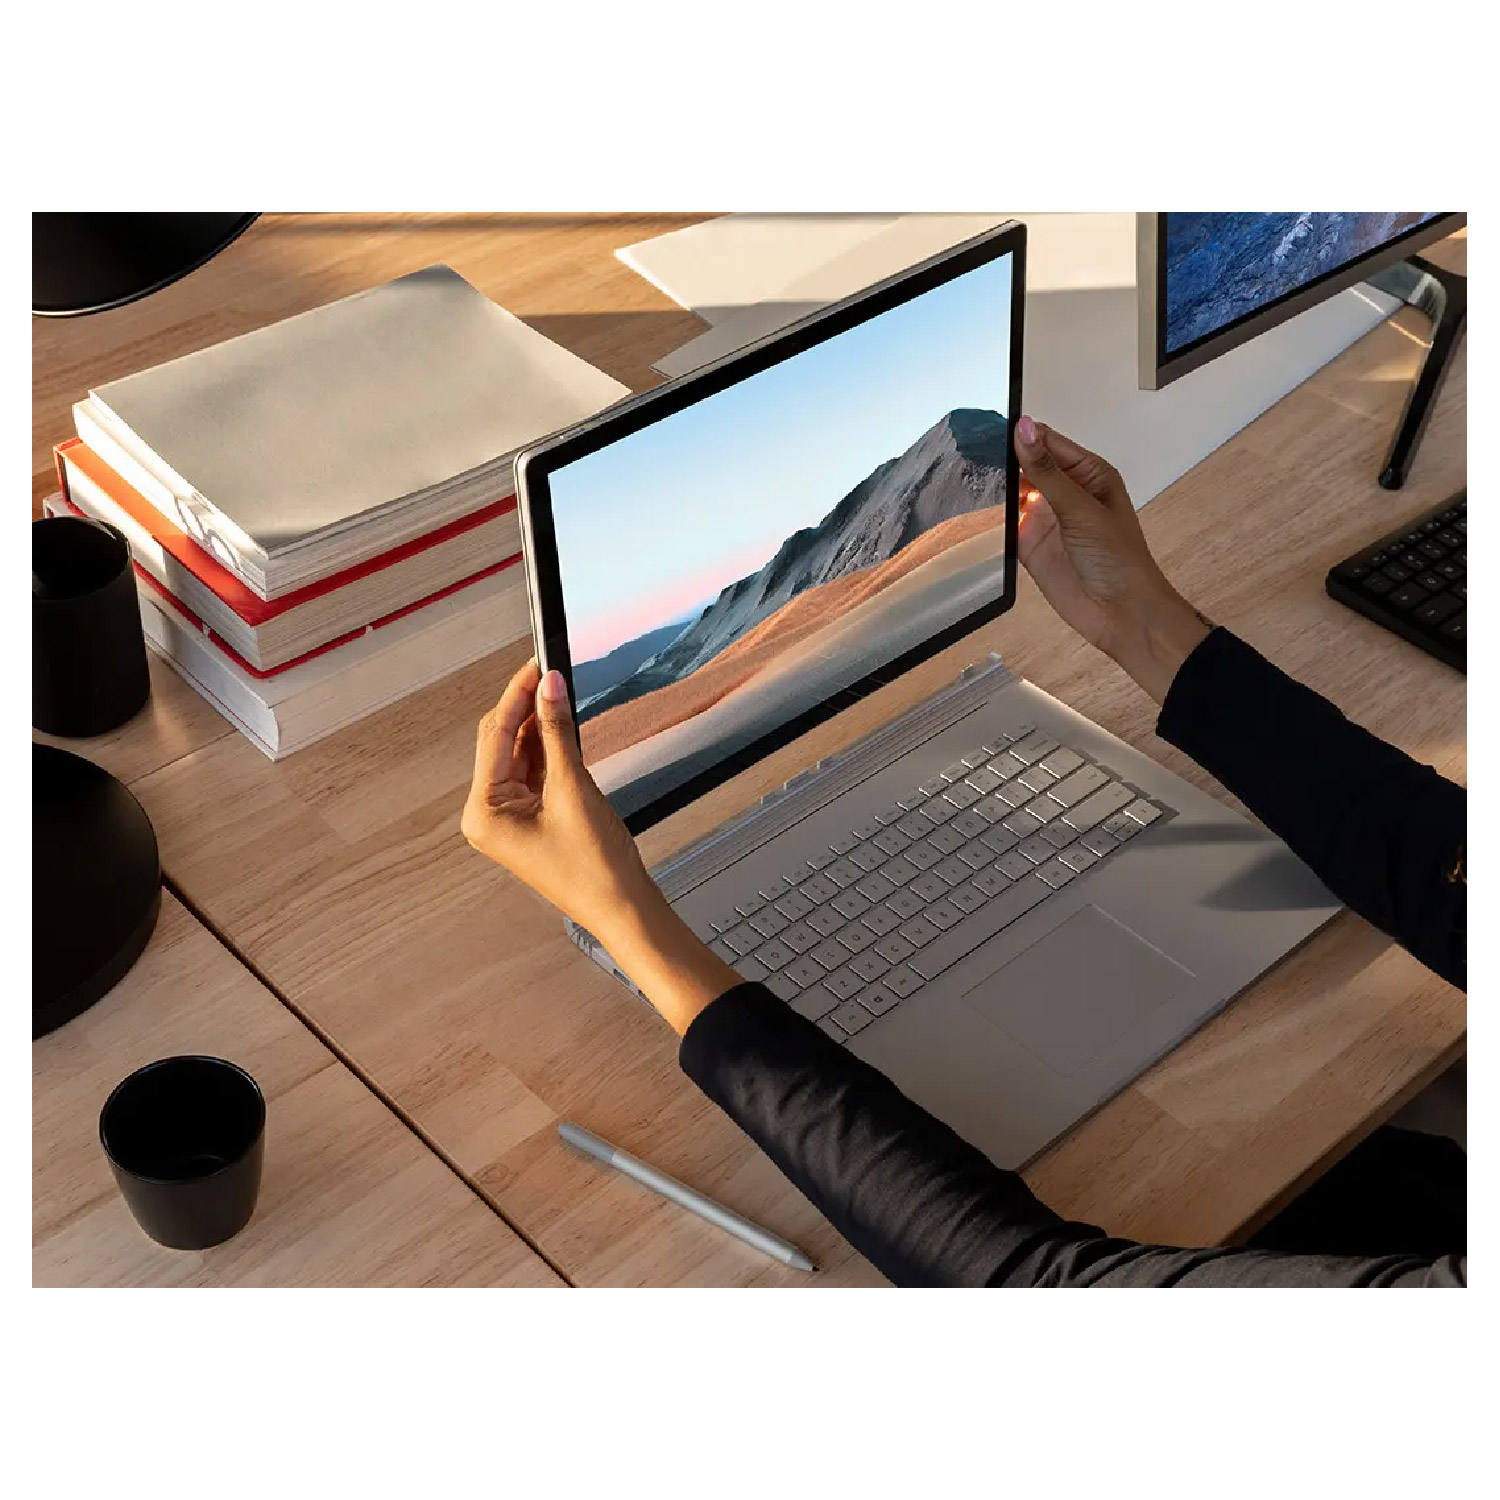 لپ تاپ مایکروسافت 13 اینچ مدل Surface Book 3 پردازنده Core i5 رم 8GB هارد256GB با صفحه نمایش لمسی